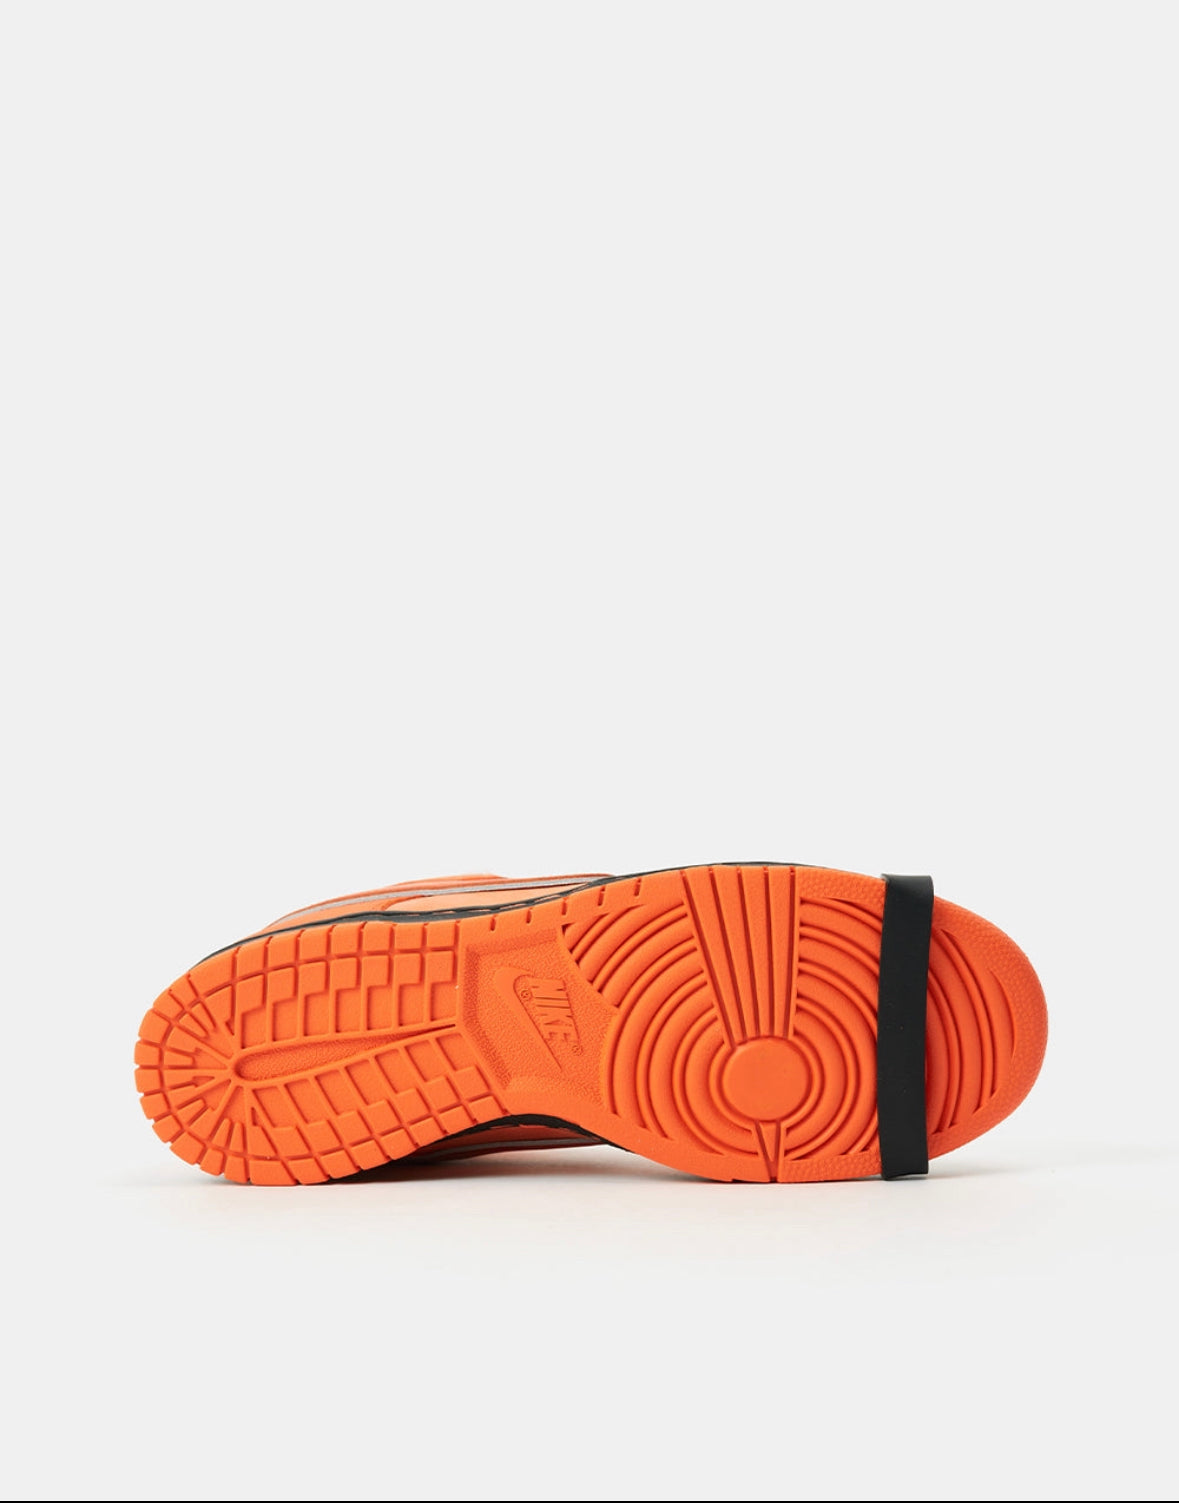 Nike SB x Concepts Dunk Low OG 'Orange Lobster'